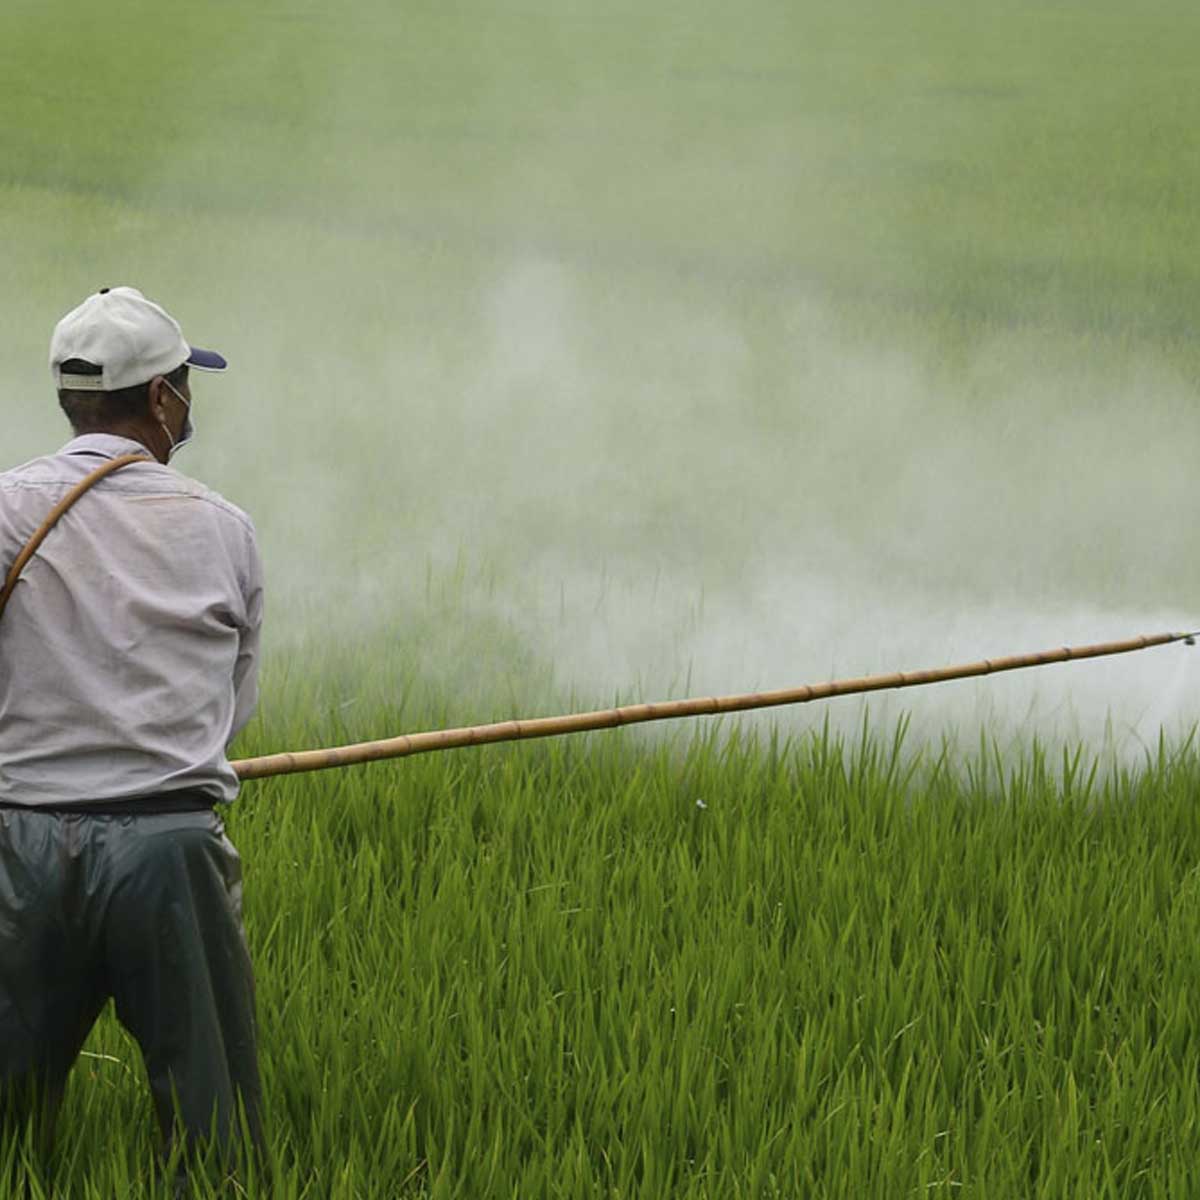 Man sprays chemicals in field.